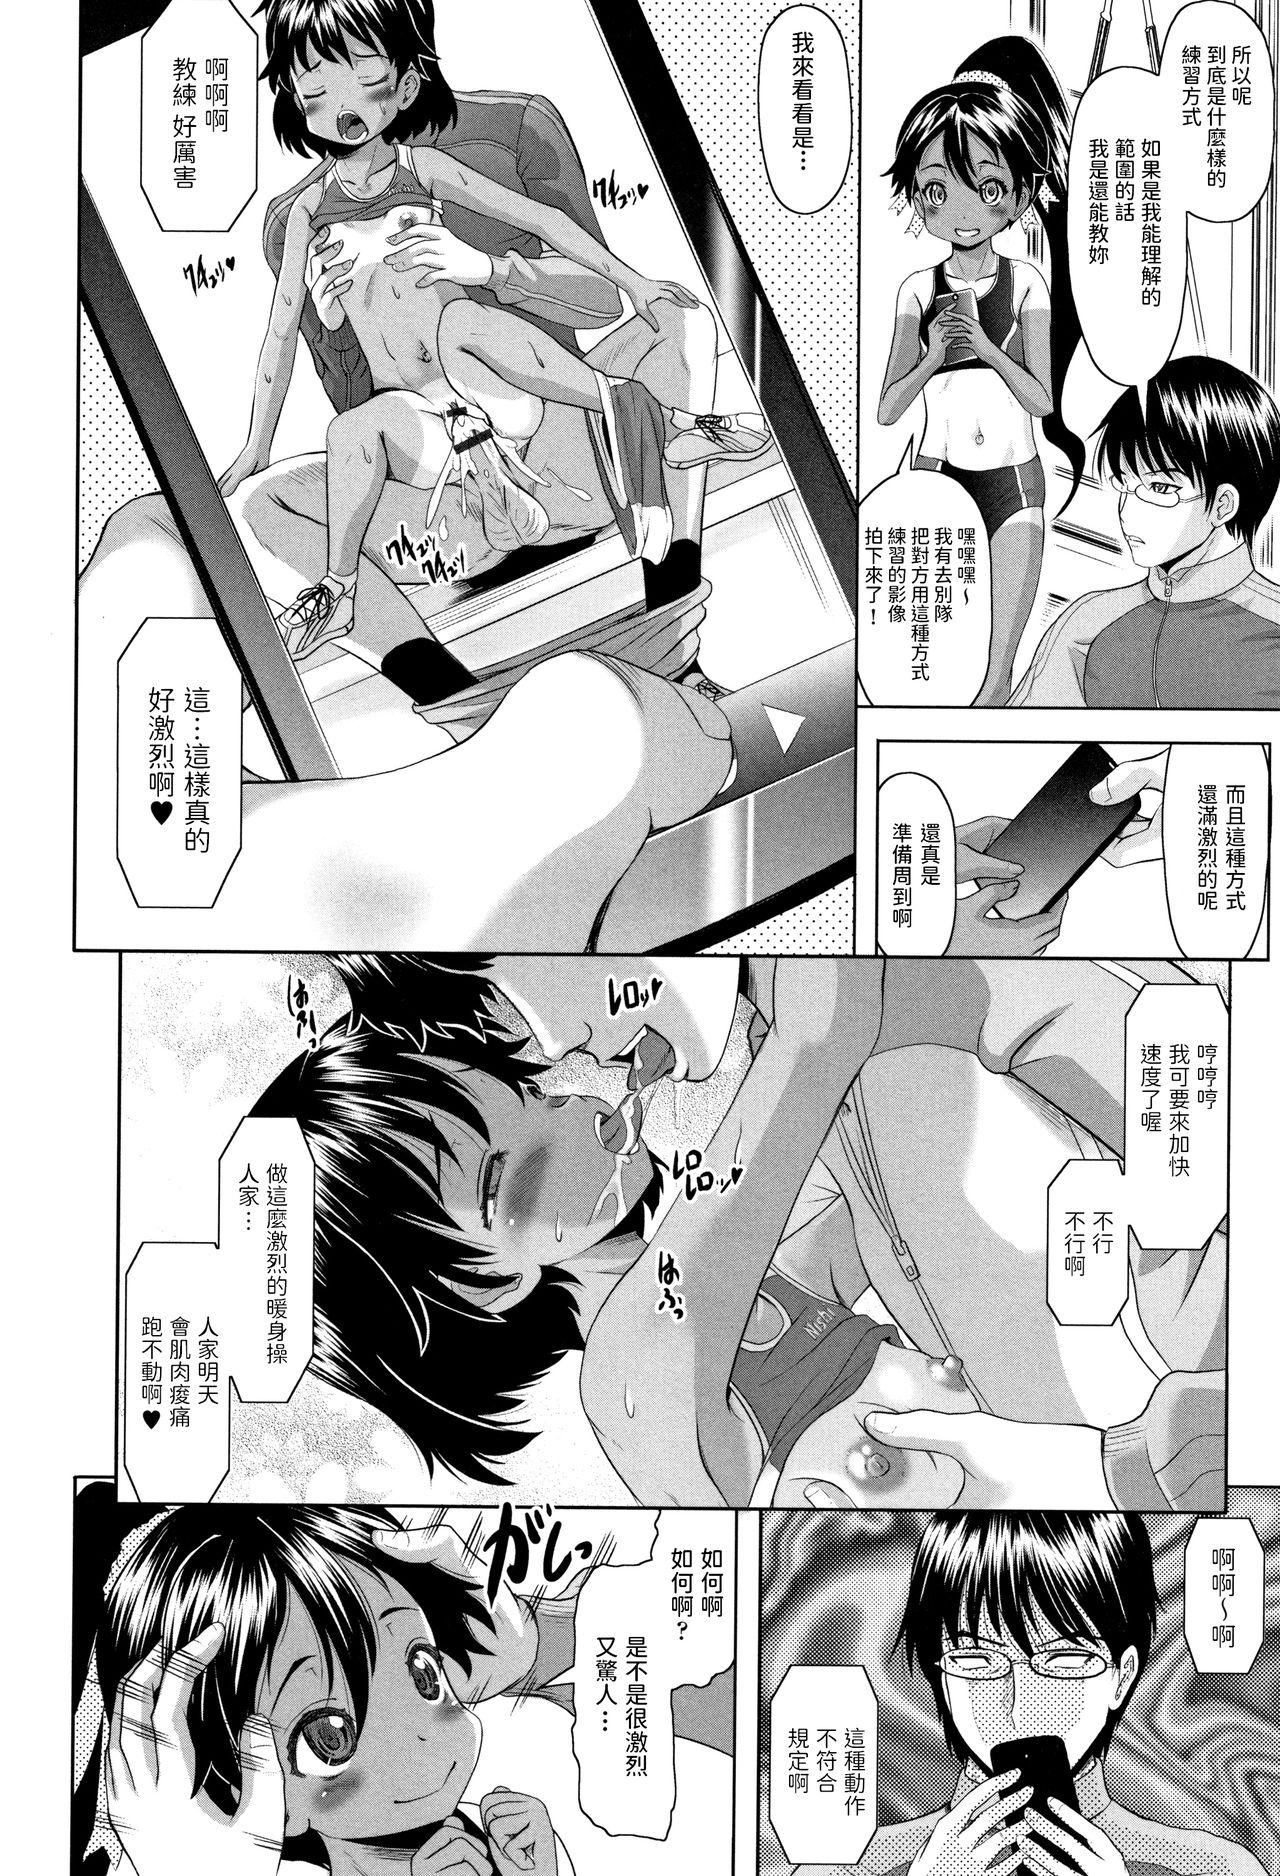 Chibola Arima to Himitsu no Tokkun Shiyo! Spandex - Page 4